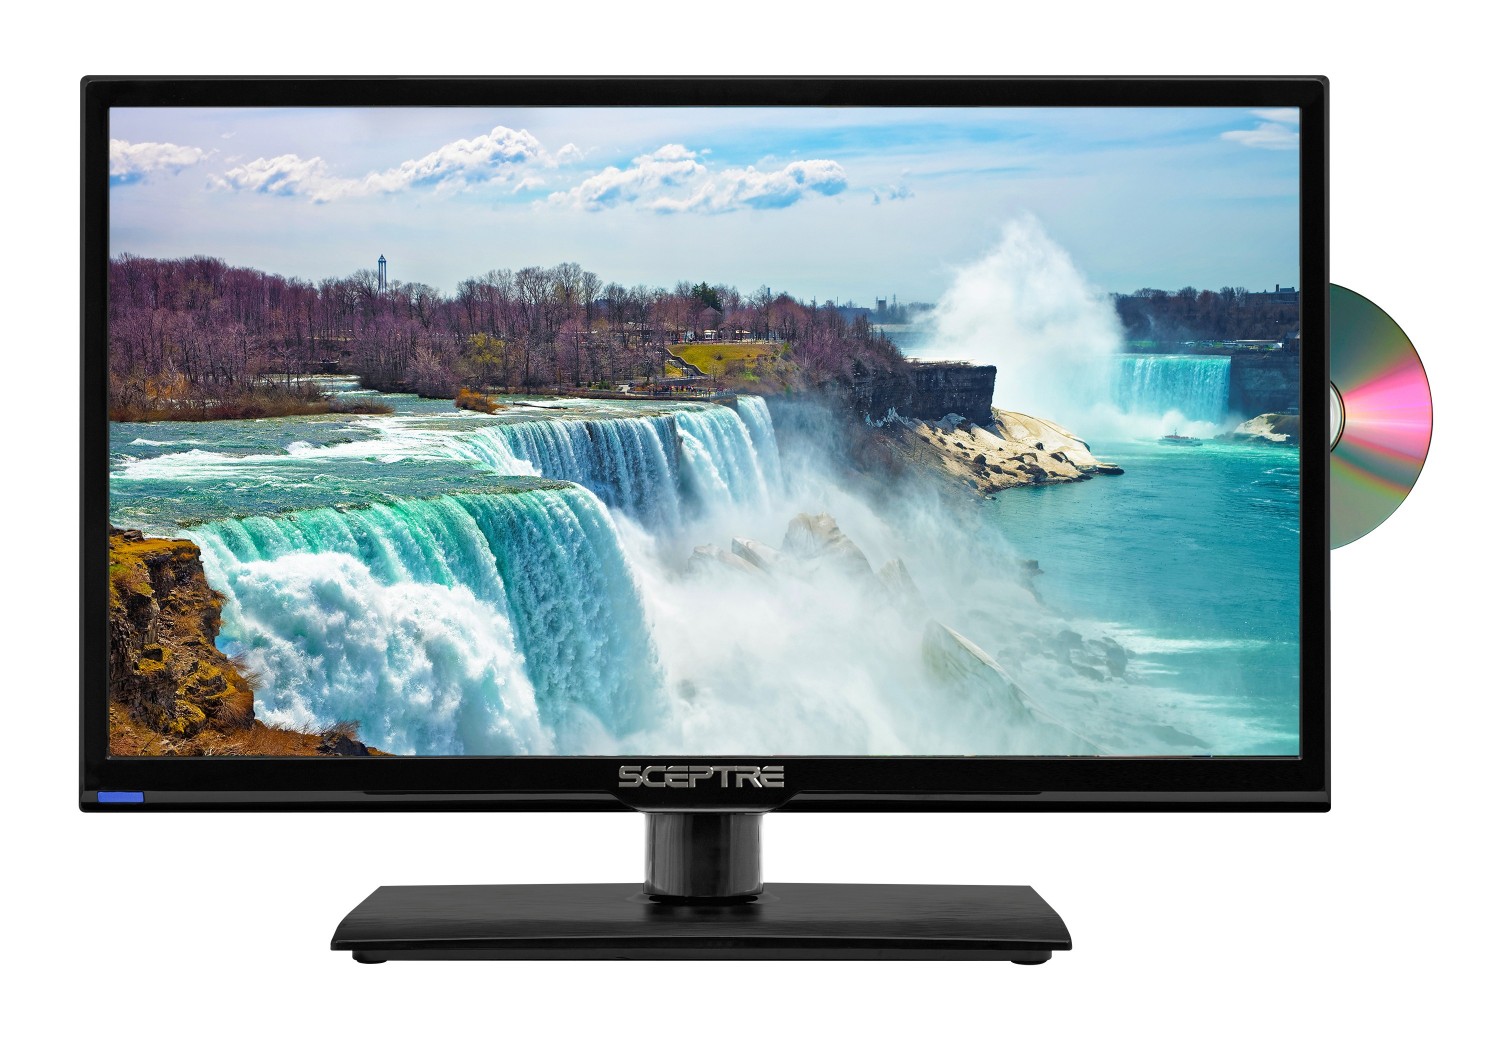 TV LED 20 - Engel LE2060, HD, USB Grabador, Dolby Digital Plus, TDT HD,  HDMI